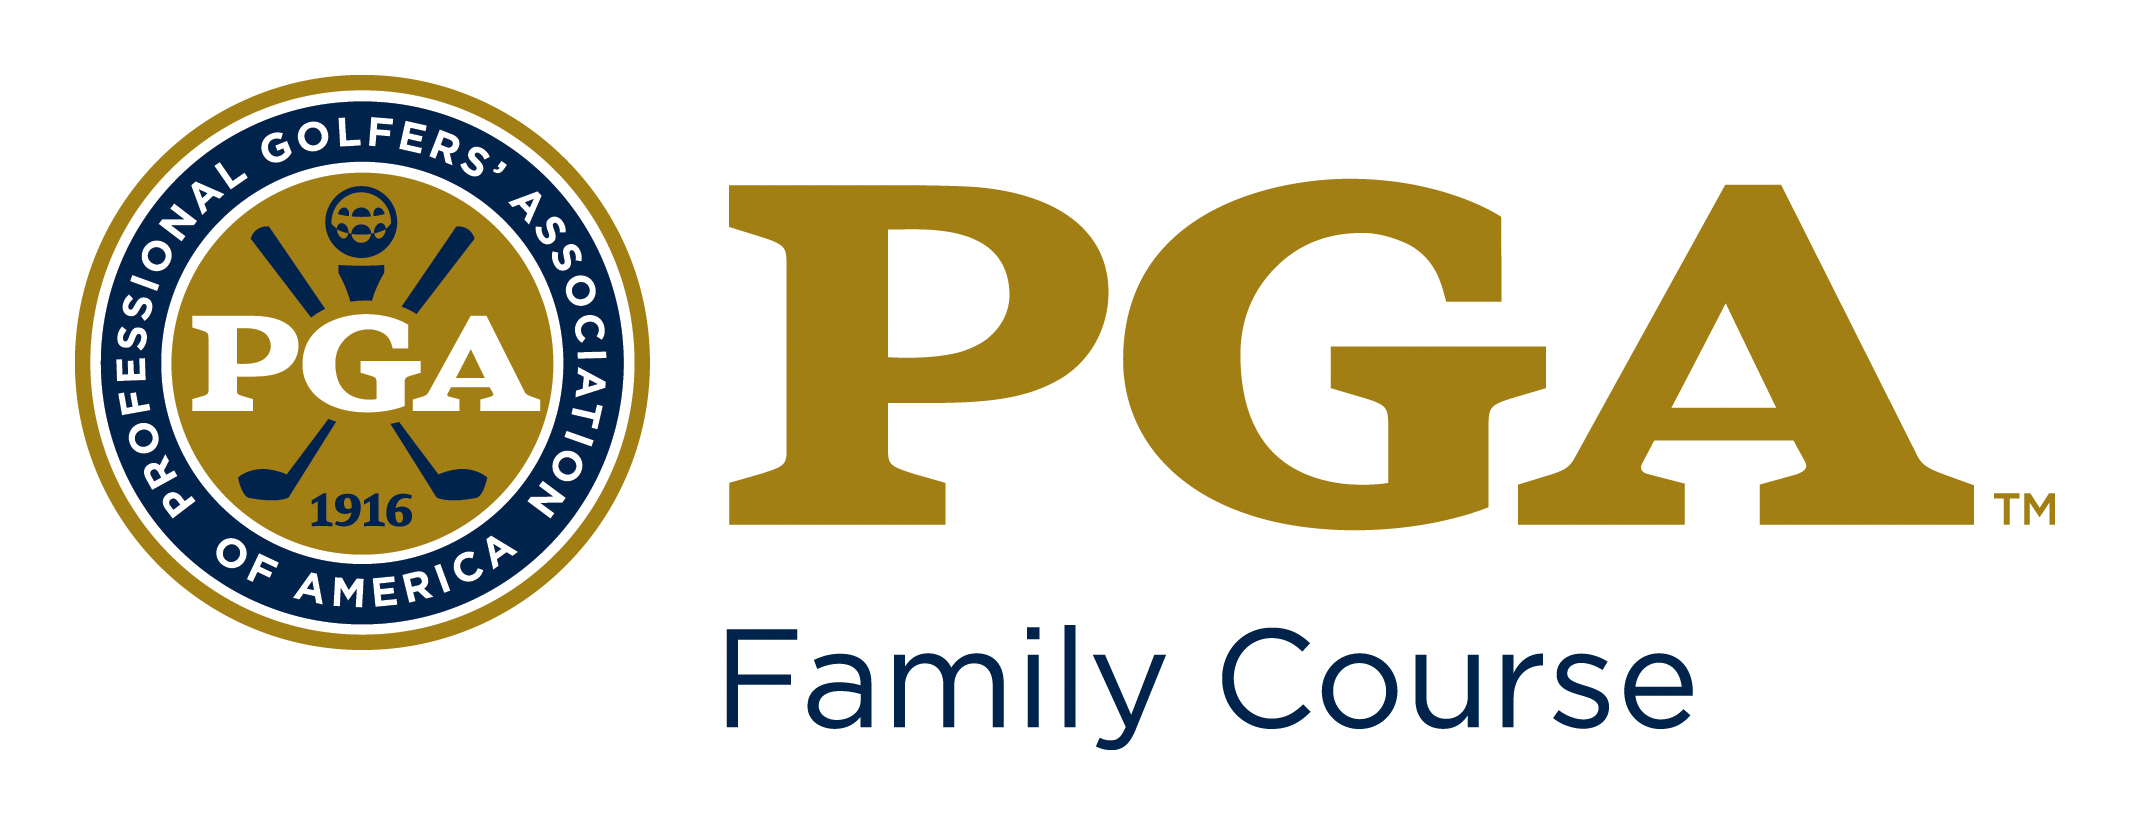 PGA Family Course Logo